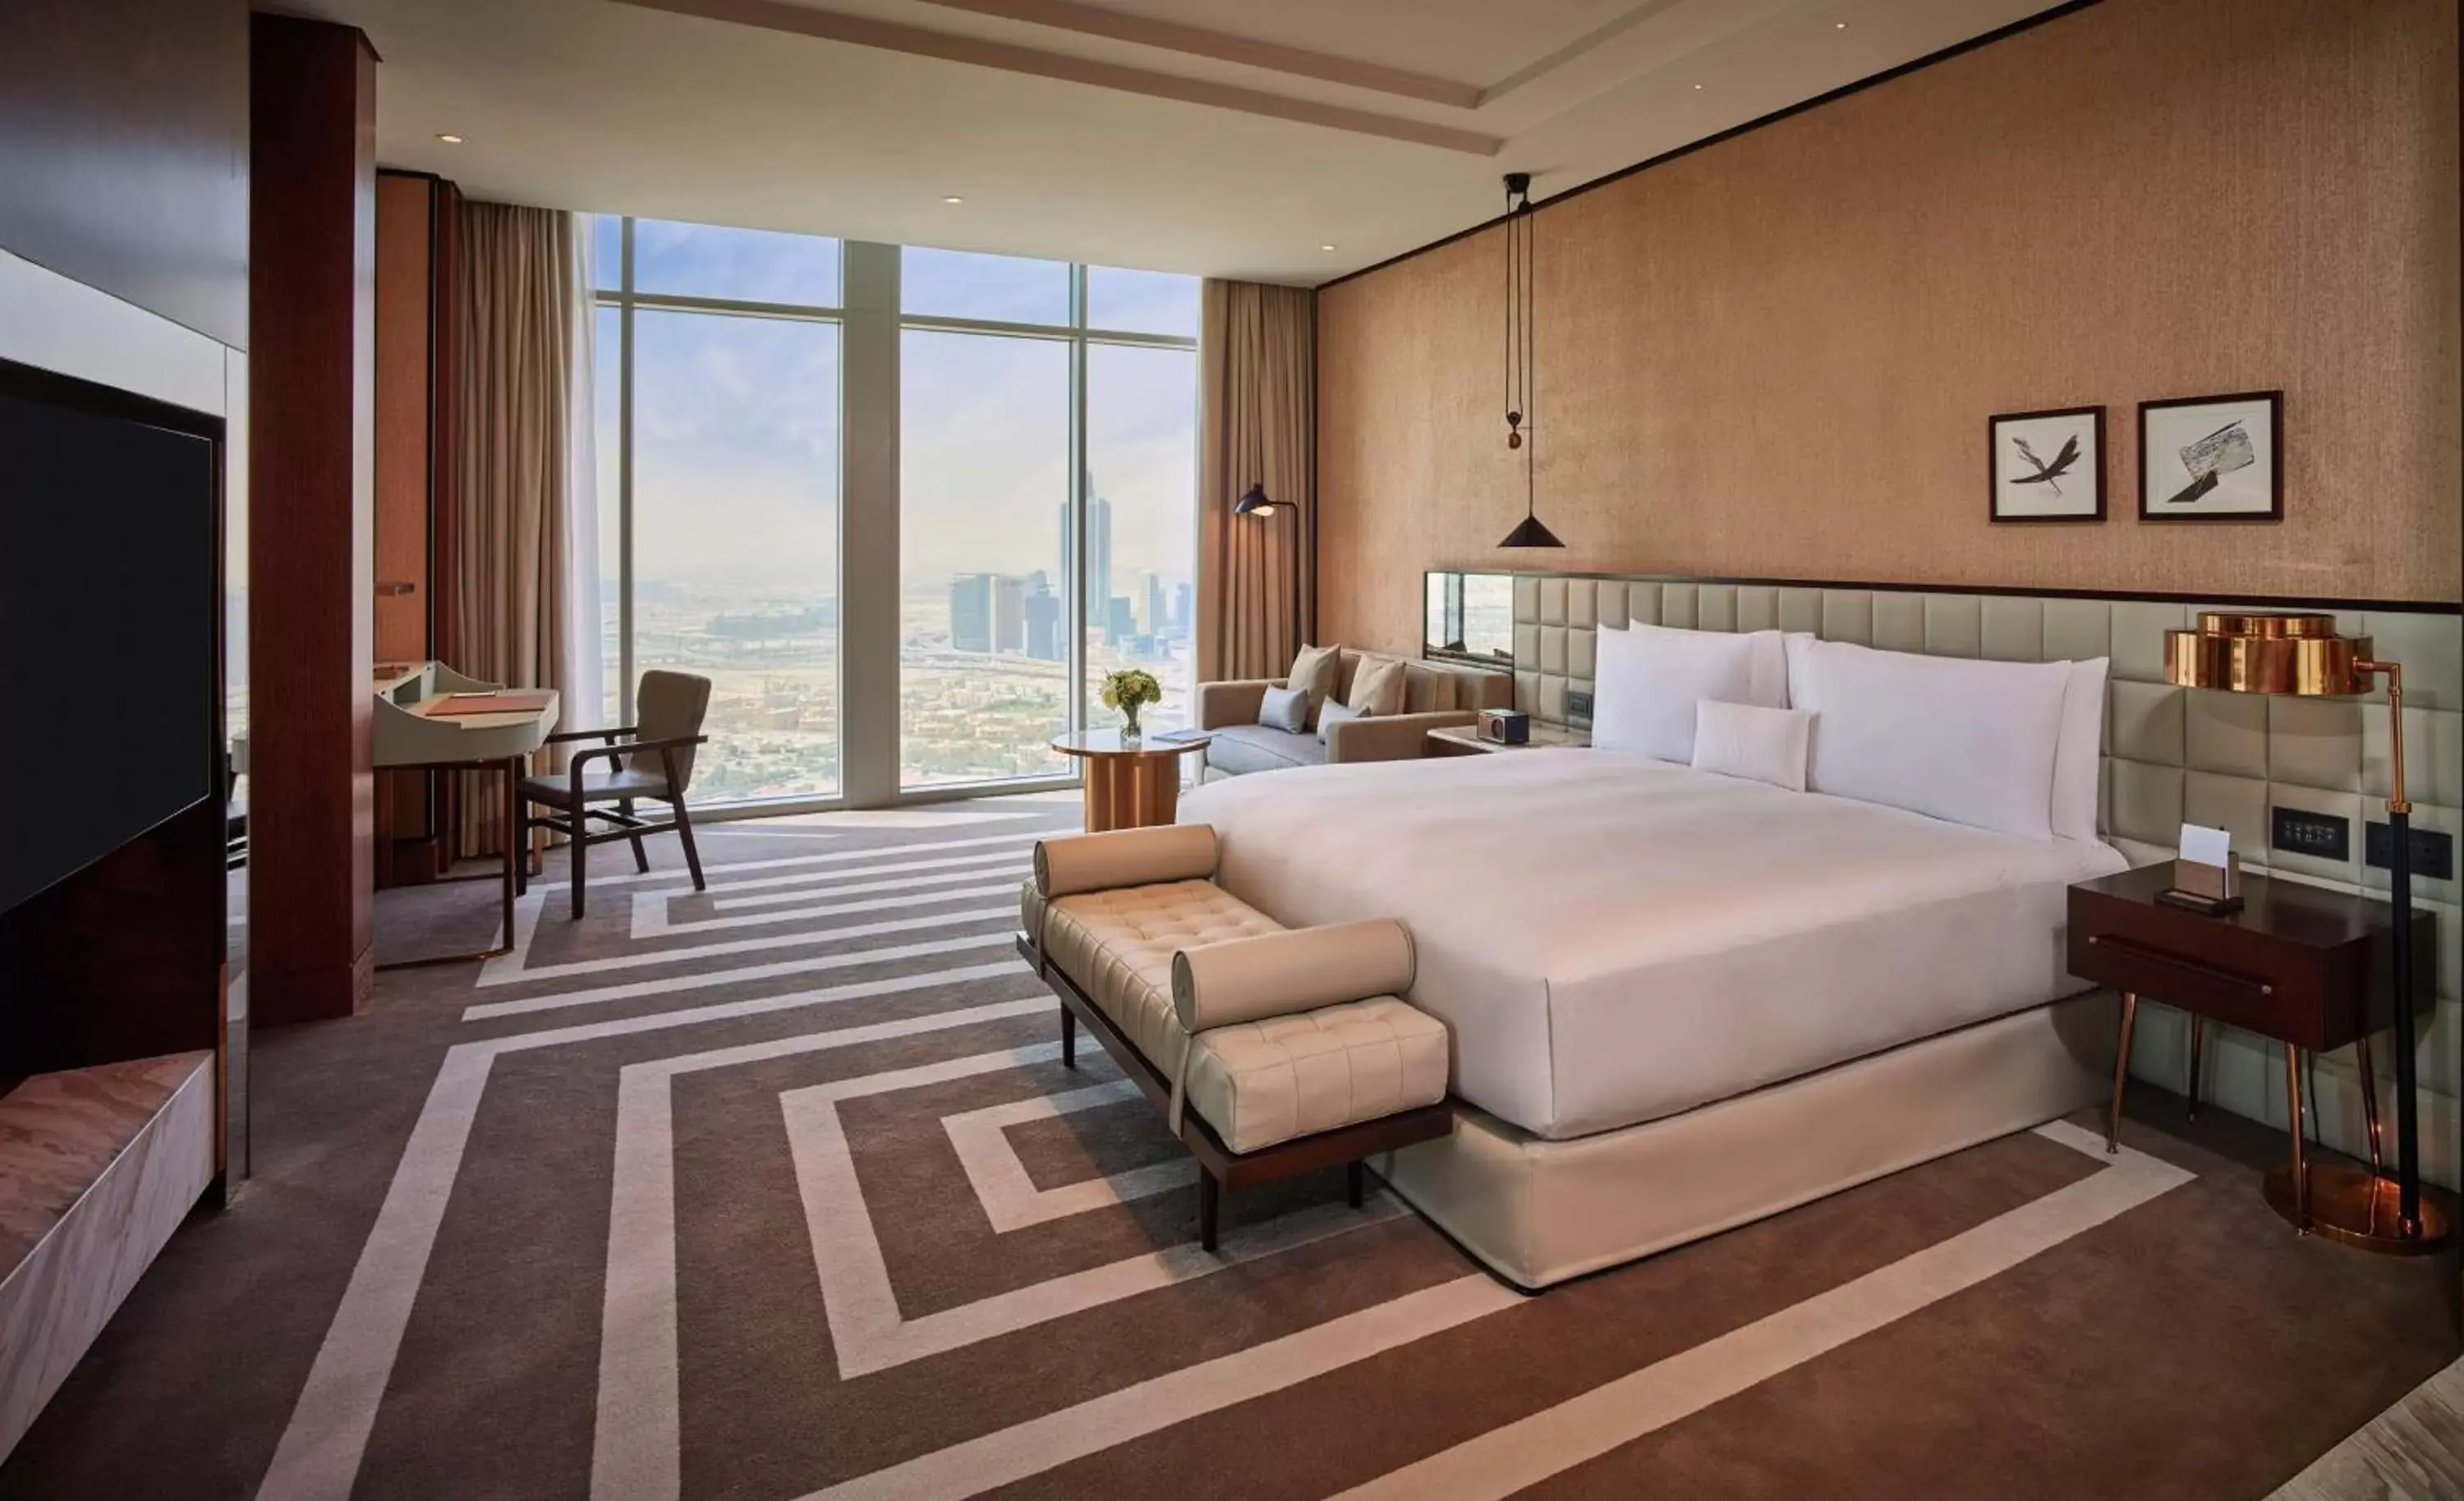 Living room in Waldorf Astoria Dubai International Financial Centre